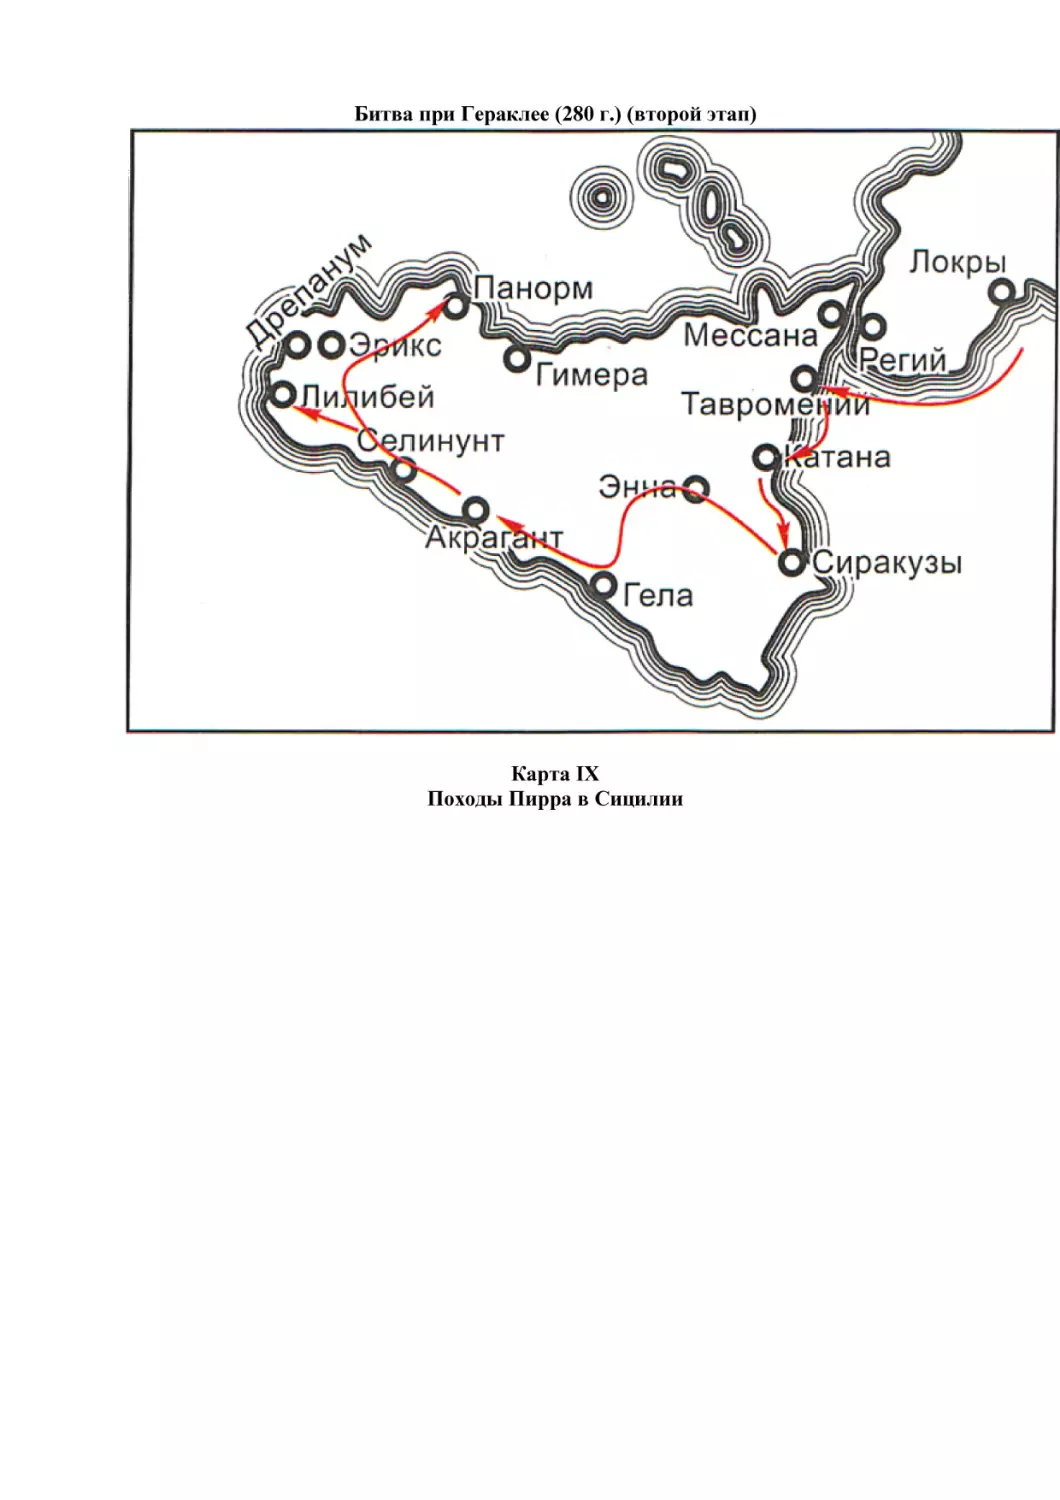 Битва при Гераклее (280 г.) (второй этап)
Карта IX
Походы Пирра в Сицилии